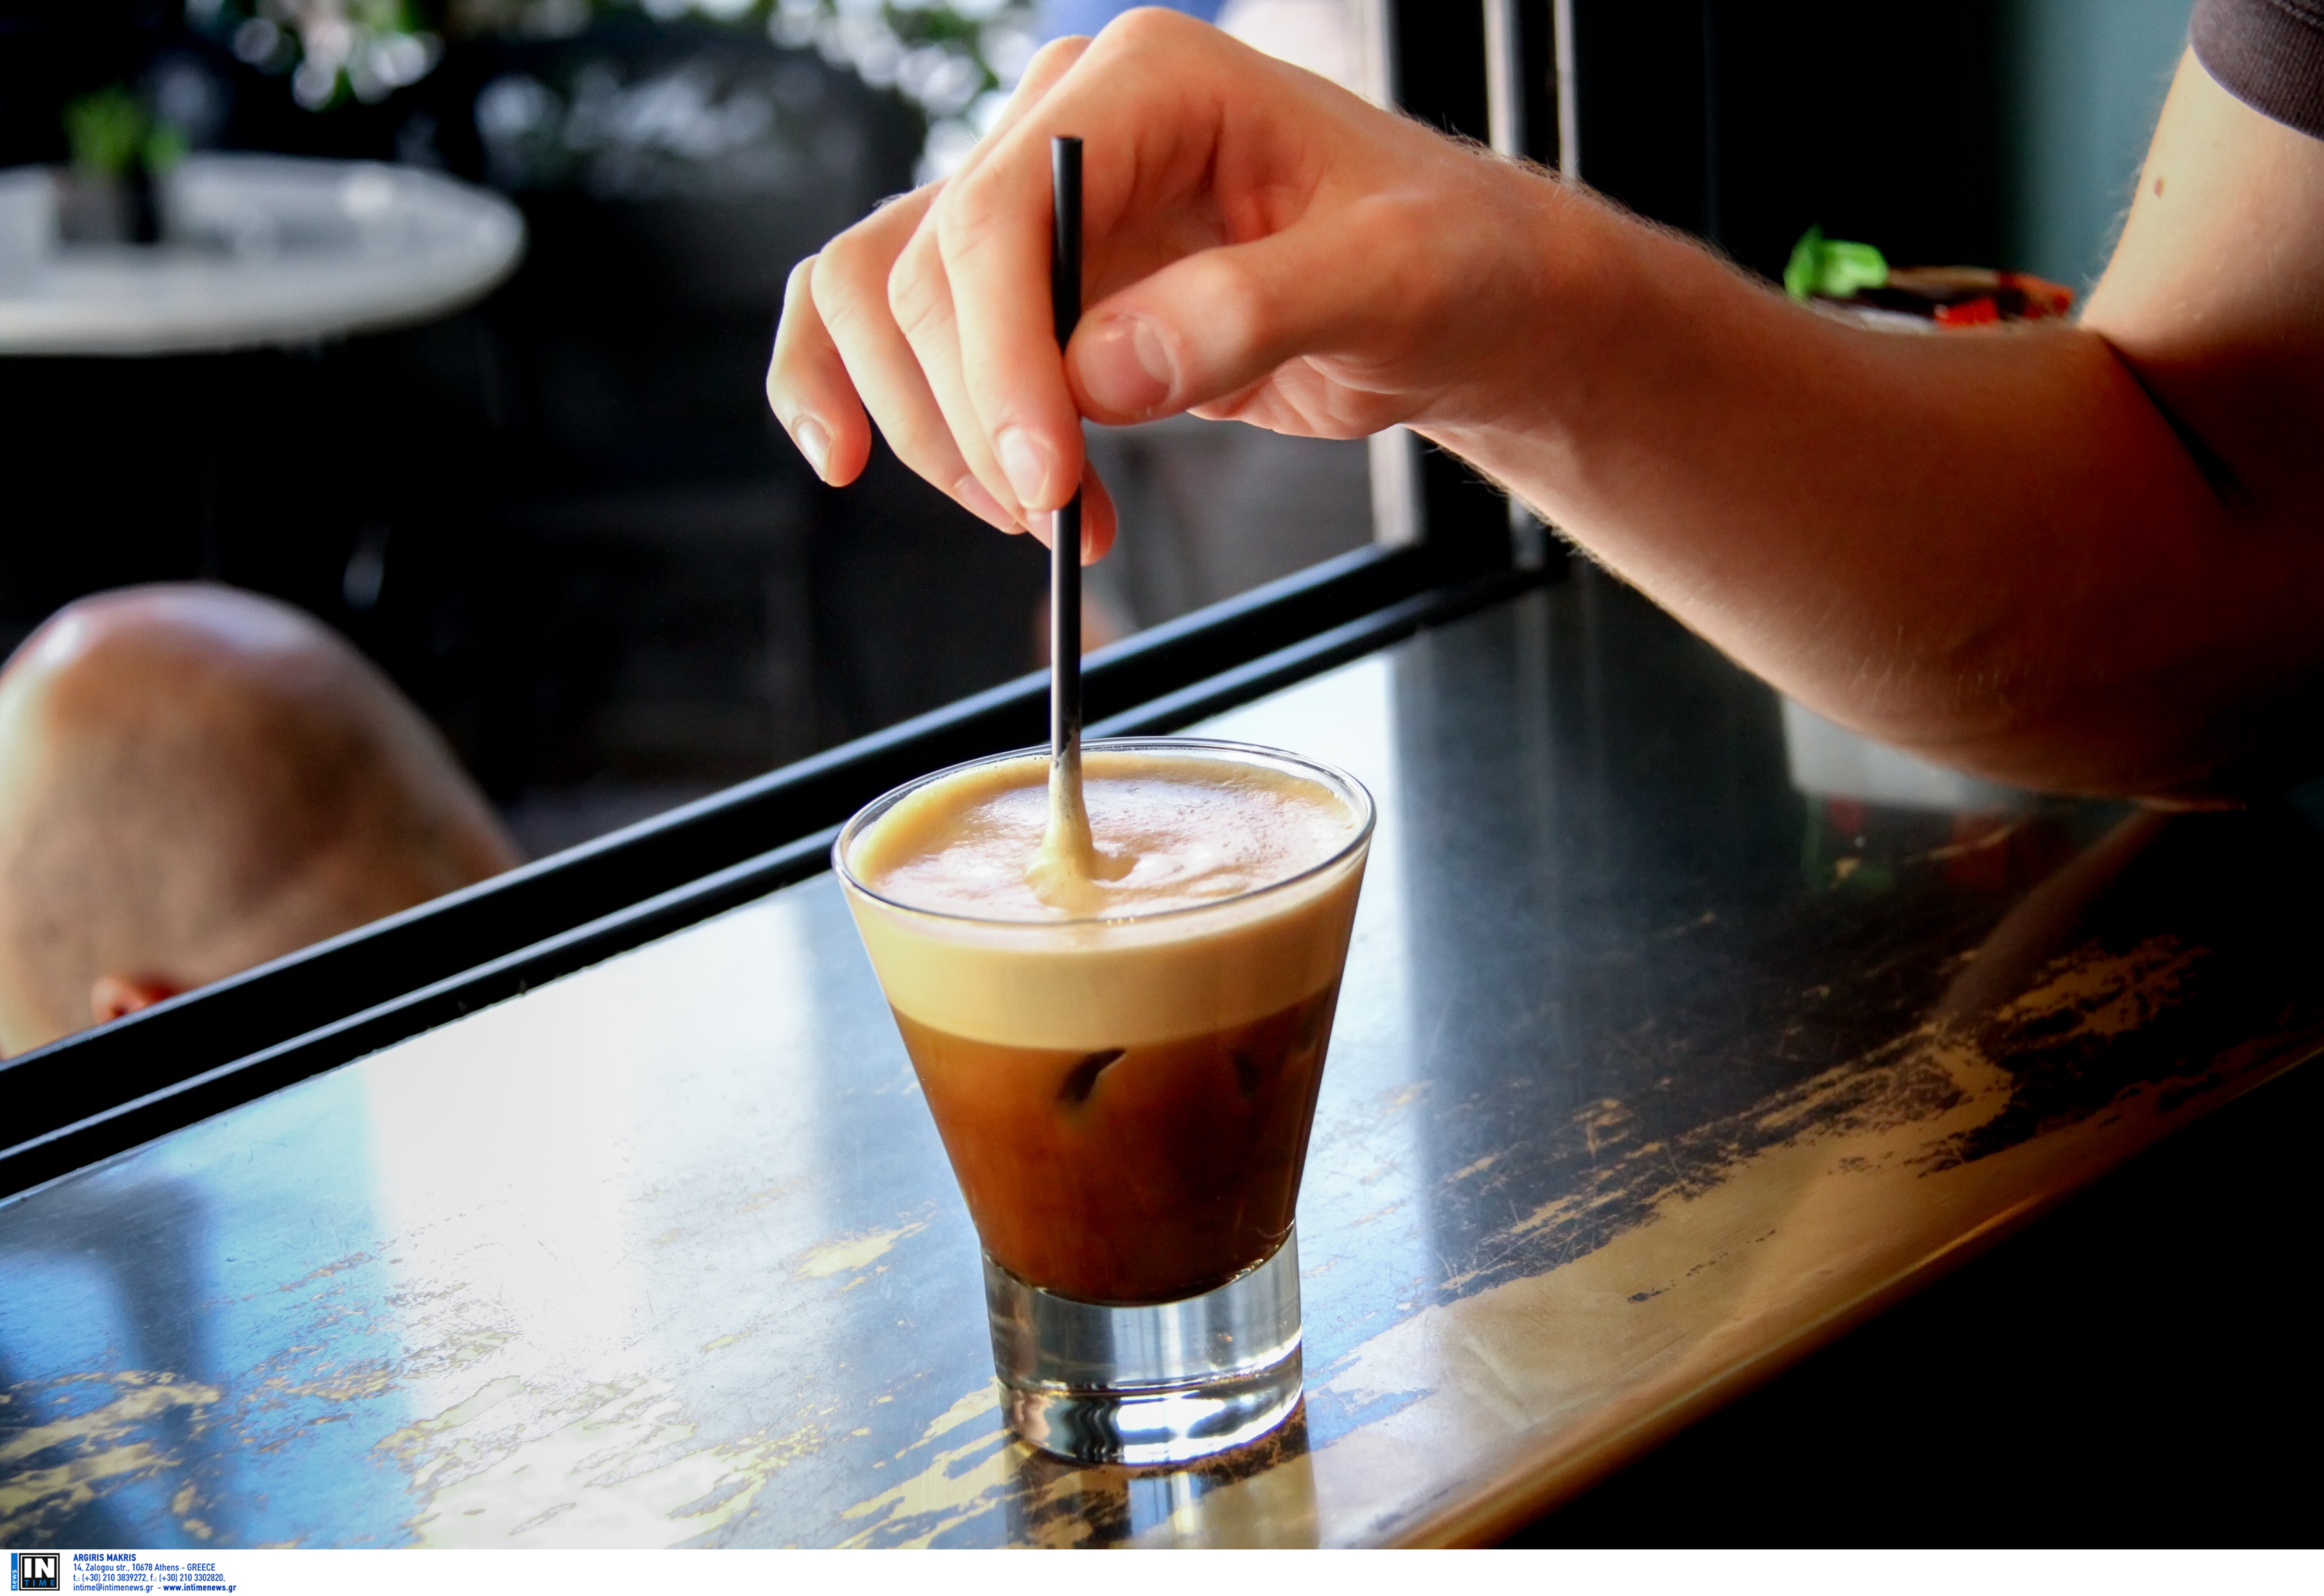 Υγεία: Η υπερβολική κατανάλωση καφέ σε καθημερινή βάση μπορεί να προκαλέσει πονοκεφάλους